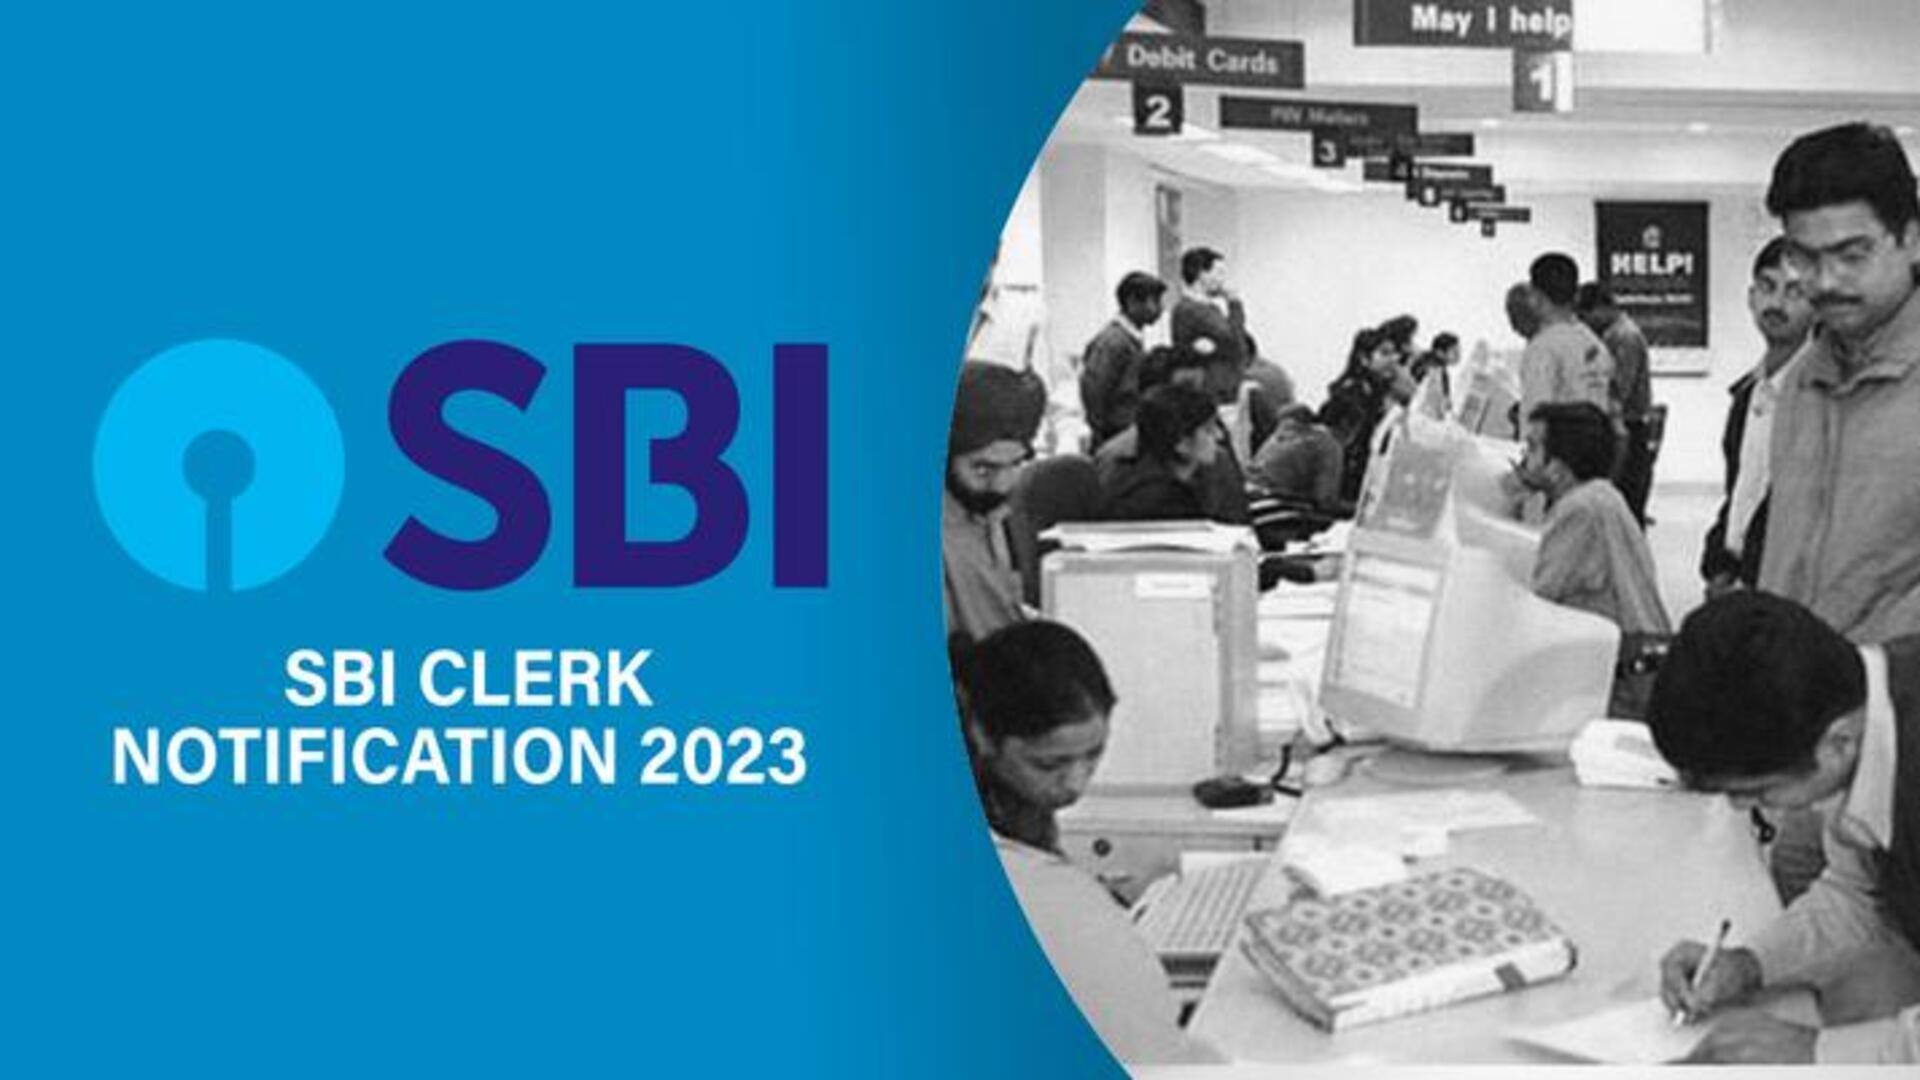 SBI क्लर्क भर्ती के लिए आवेदन प्रक्रिया शुरू, भरे जाएंगे 8,000 से ज्यादा पद